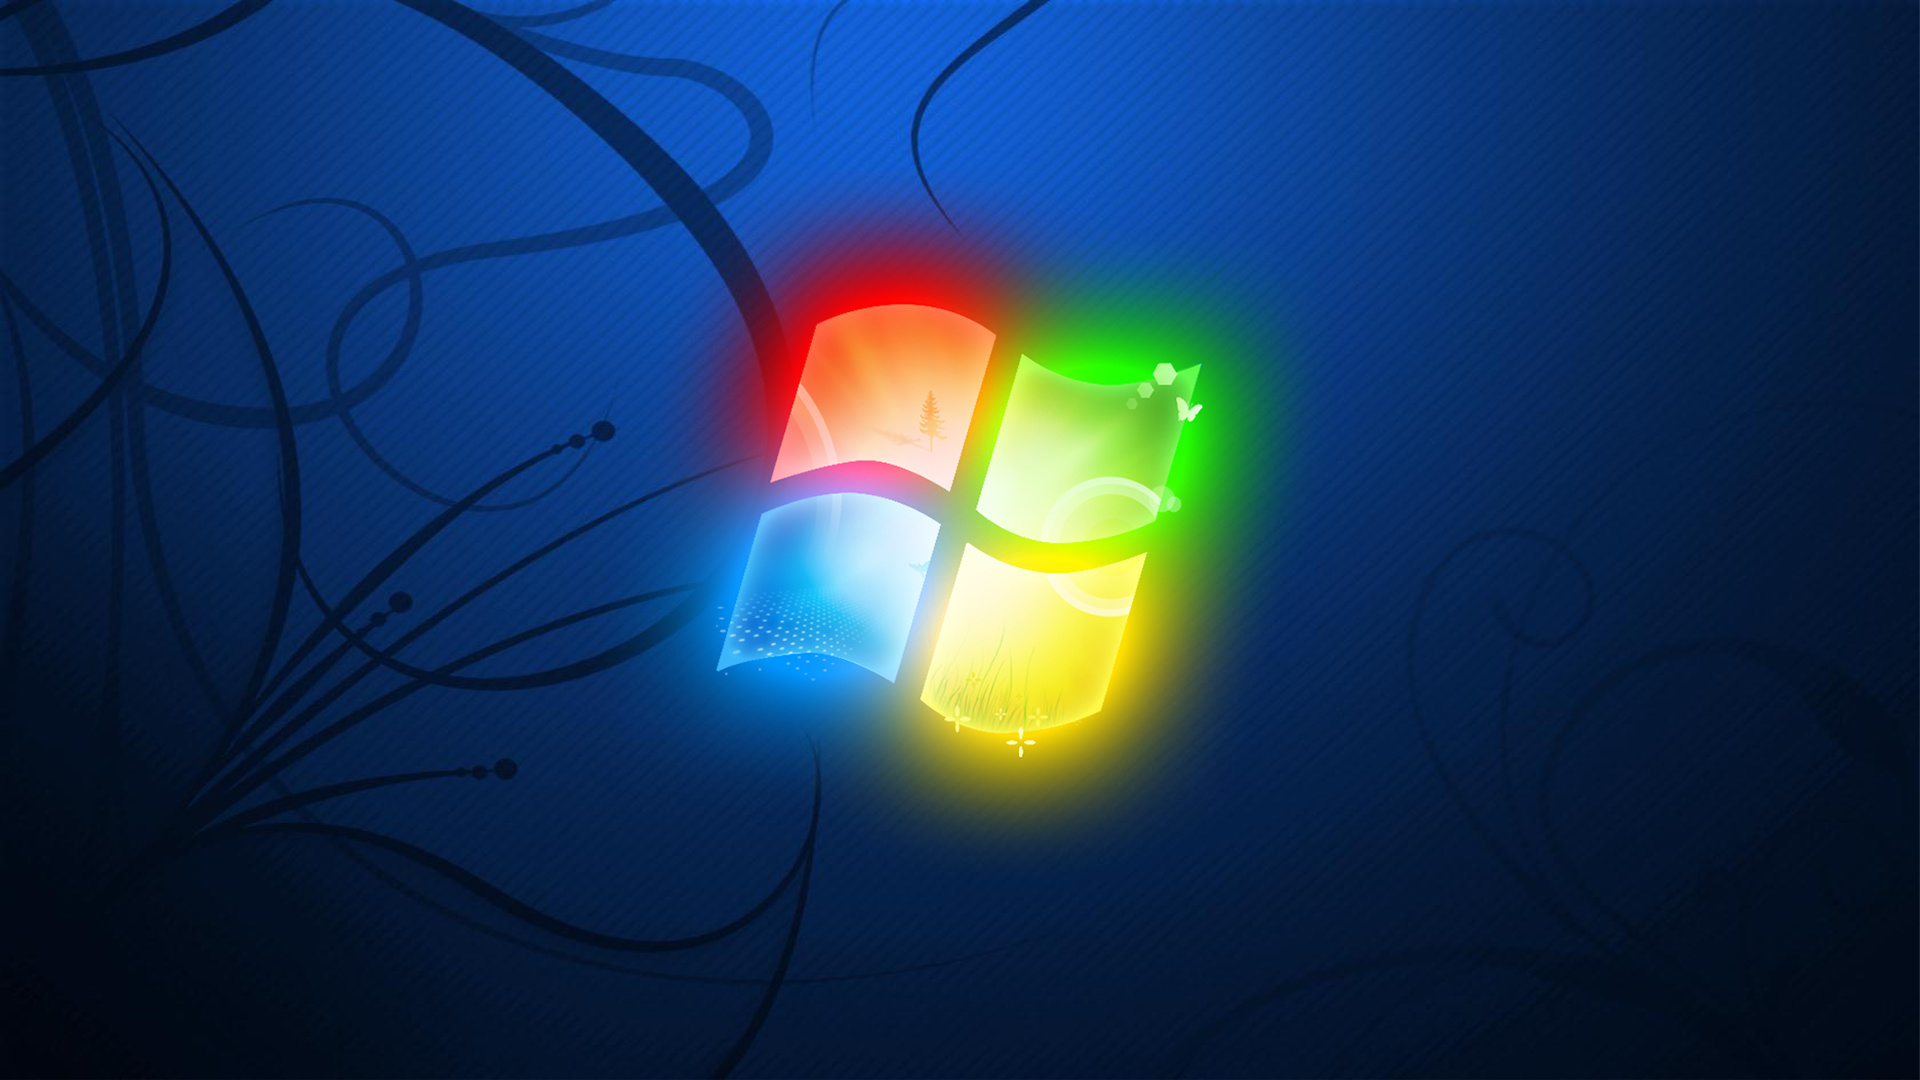 Анимация рабочего стола windows. Обои виндовс. Обои Windows 7. Фон виндовс 7. Заставка на рабочий стол Windows.